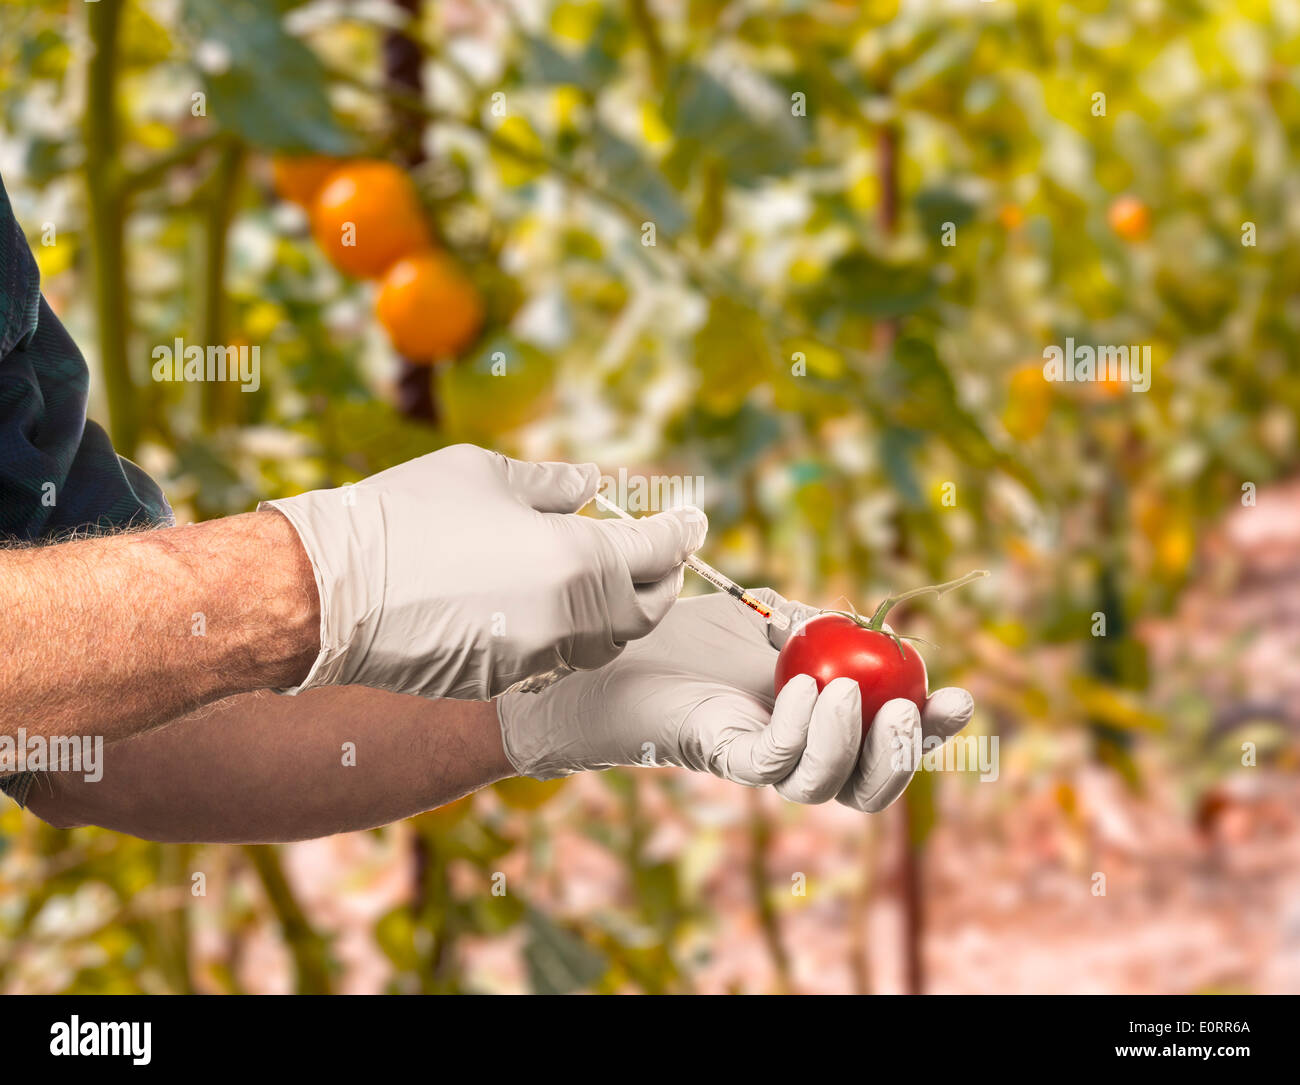 Wissenschaft - gentechnisch veränderte Lebensmittel Konzept - Wissenschaftler Injektion von Flüssigkeit in eine Tomate im freien Stockfoto